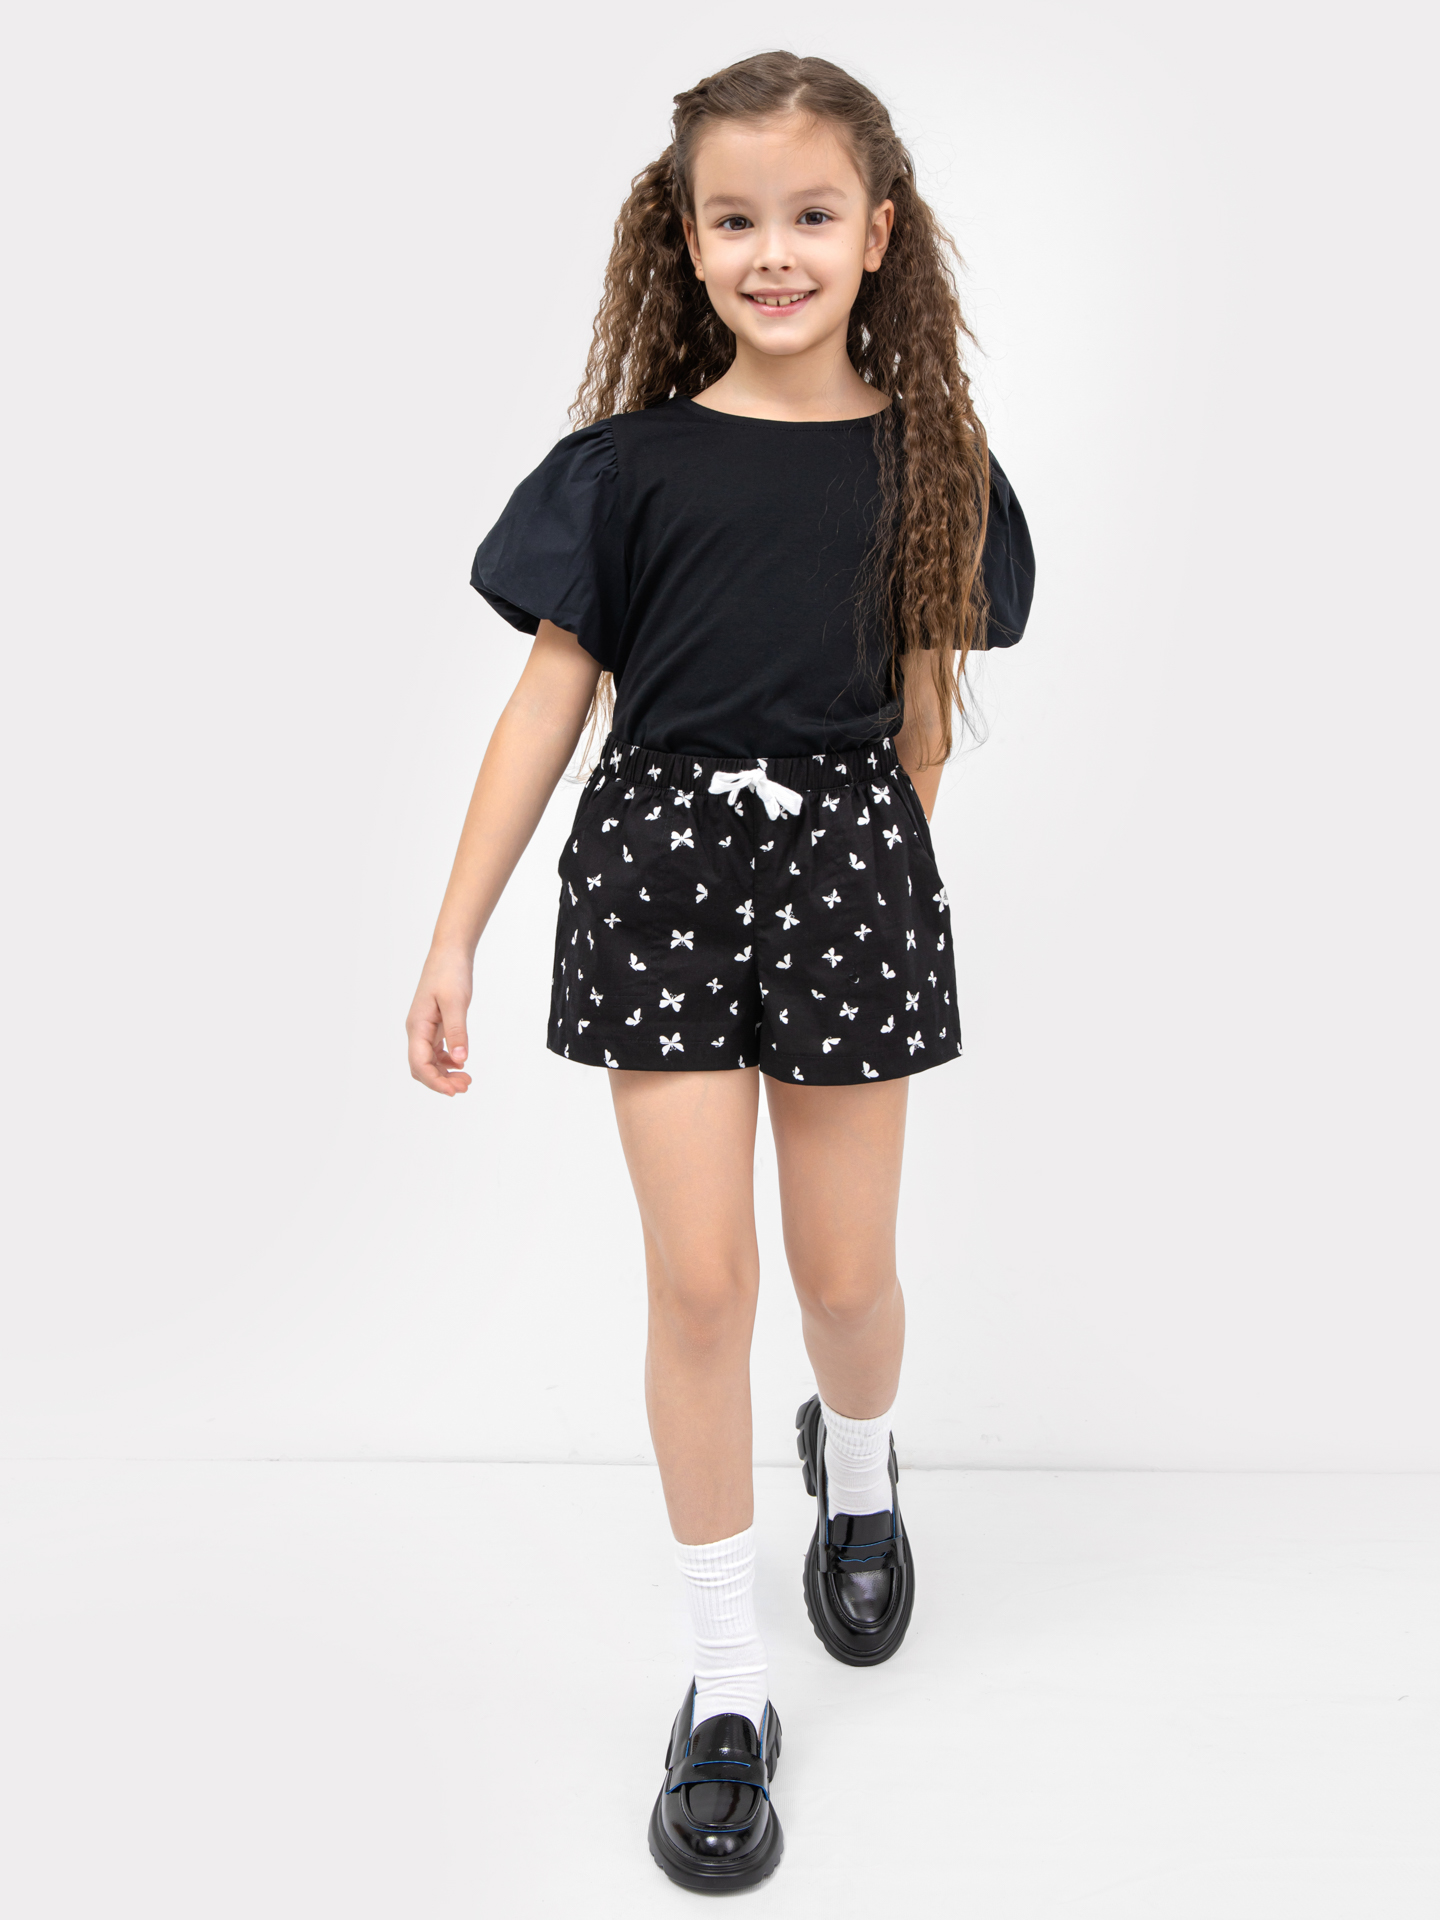 Хлопковый джемпер с объемными рукавами черного цвета для девочек